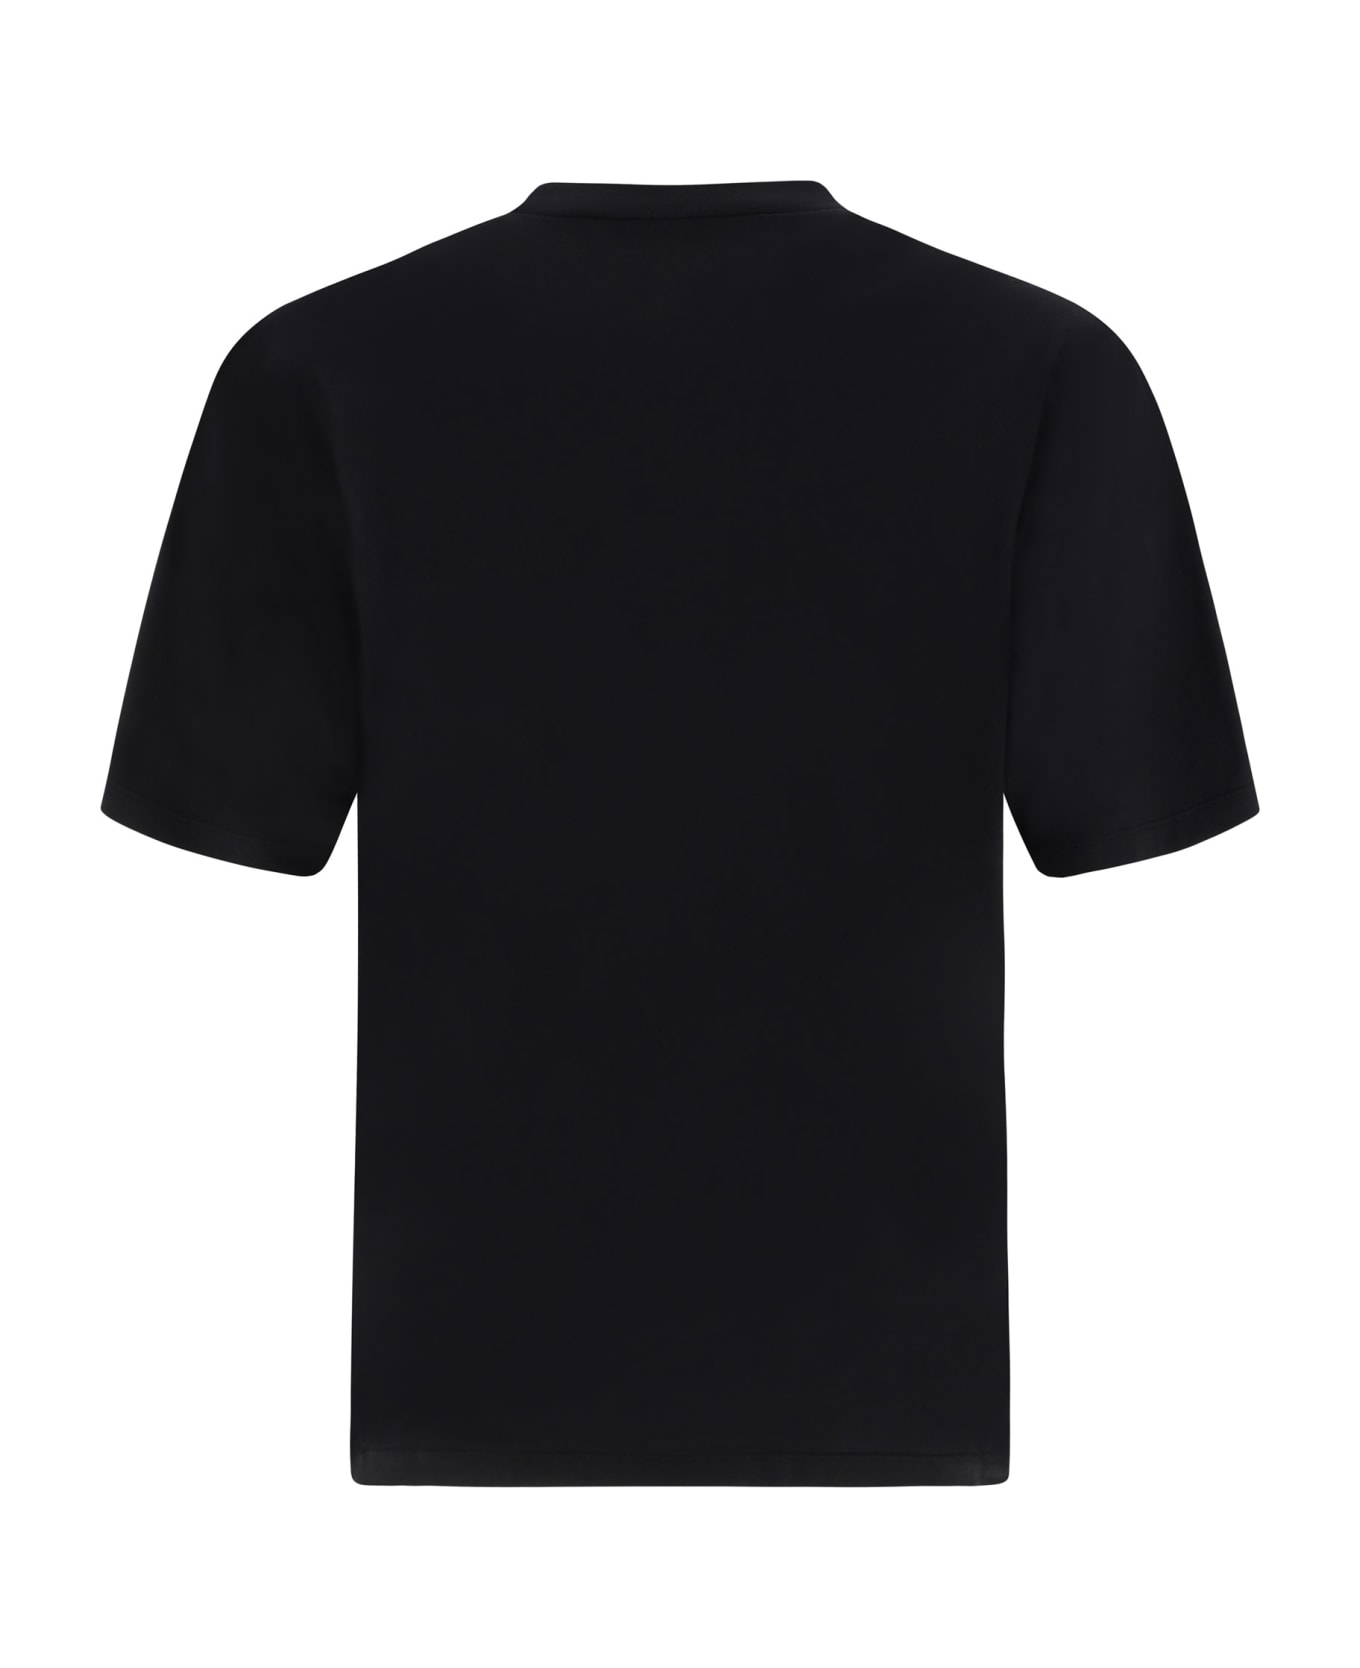 Dsquared2 Cotton T-shirt - 900